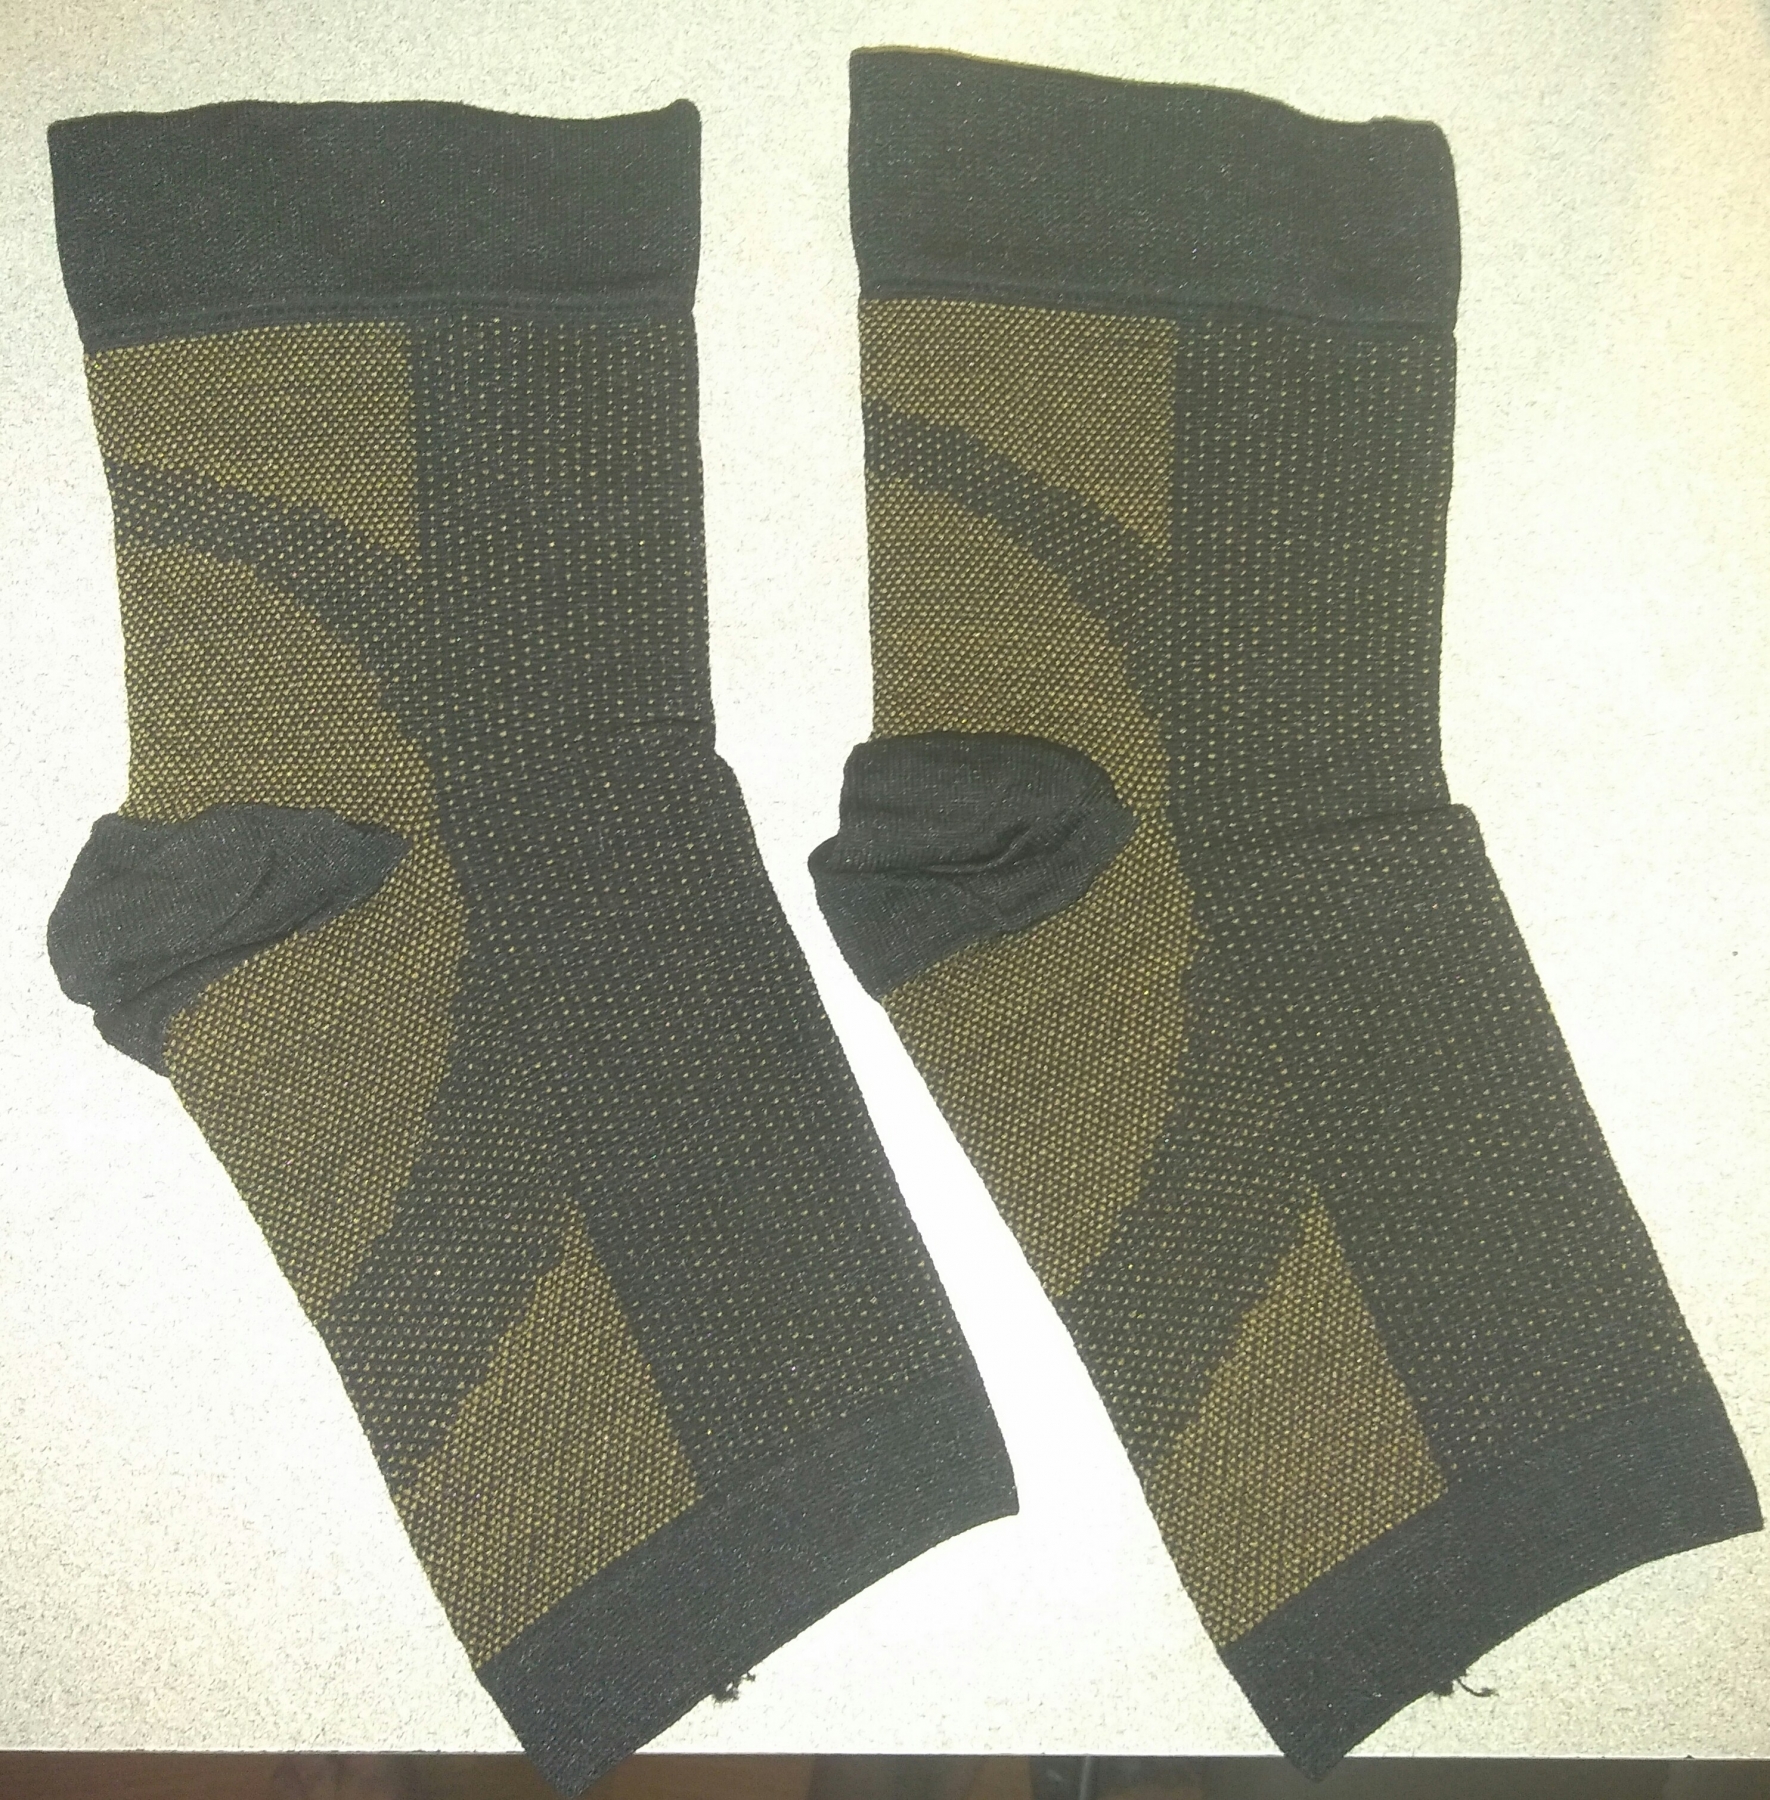 Copper compression socks